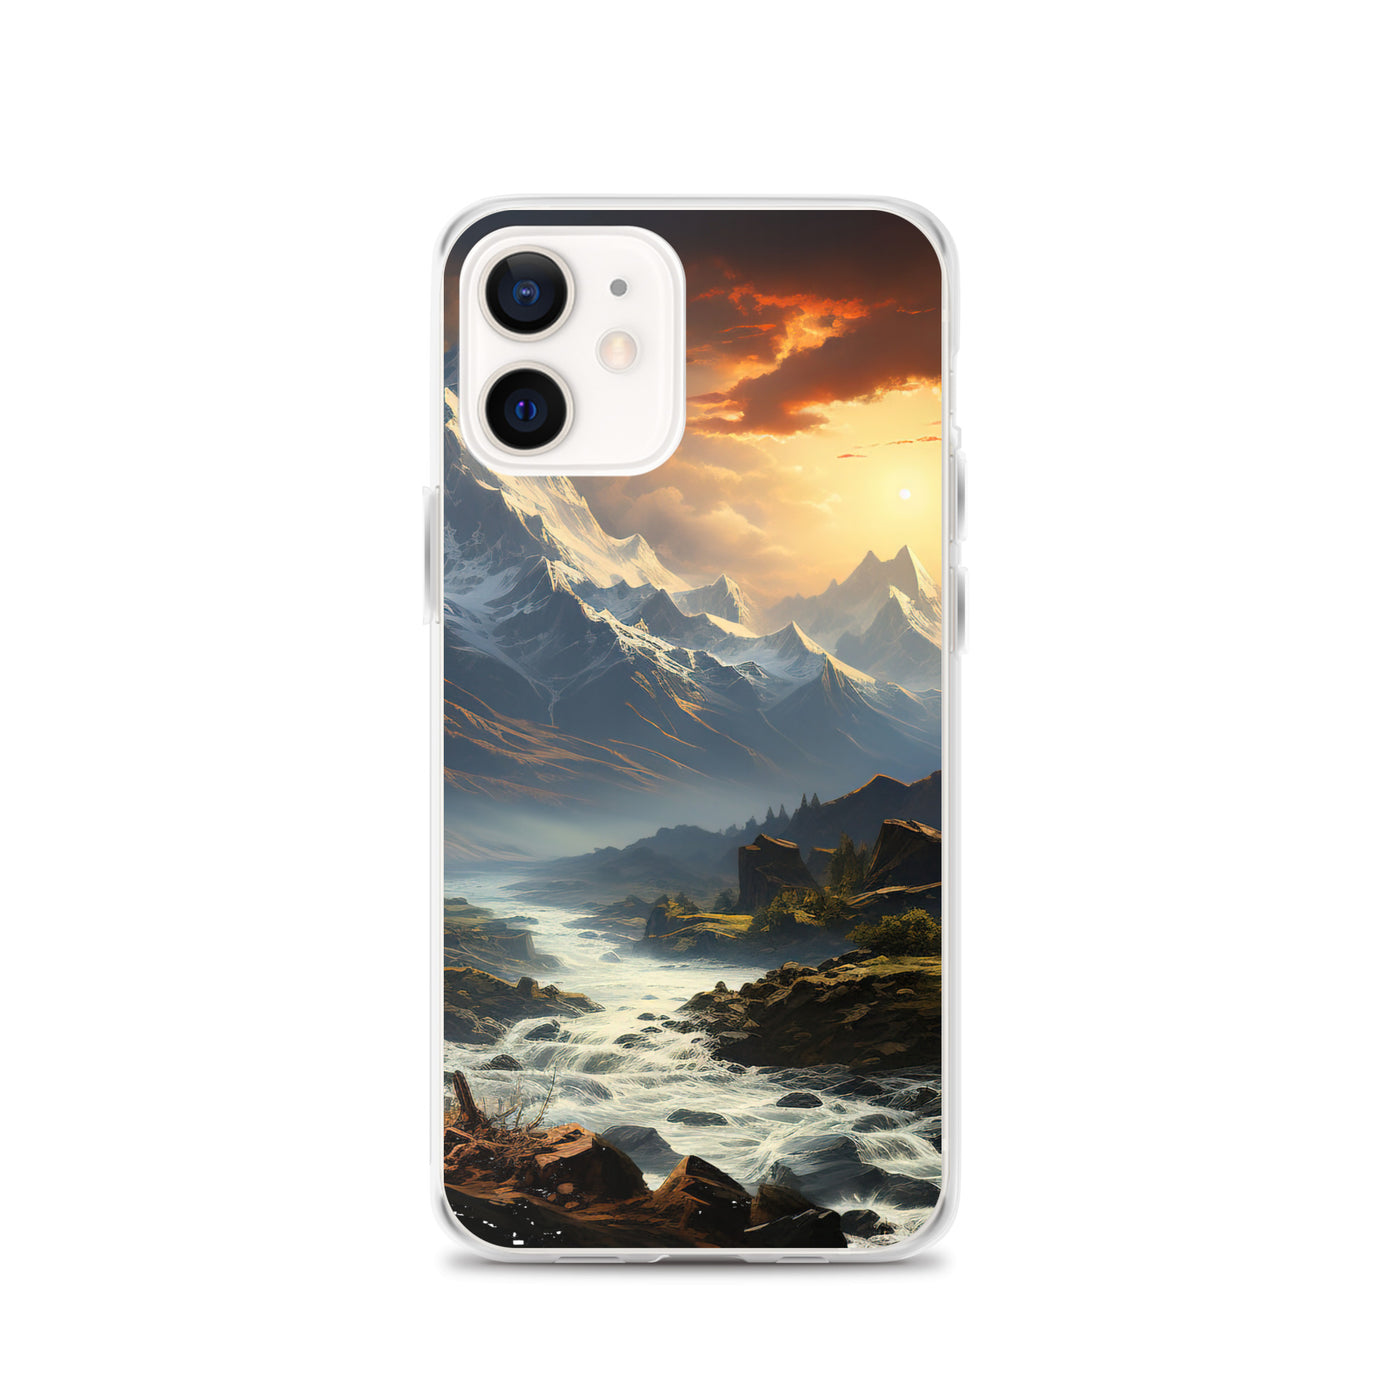 Berge, Sonne, steiniger Bach und Wolken - Epische Stimmung - iPhone Schutzhülle (durchsichtig) berge xxx iPhone 12